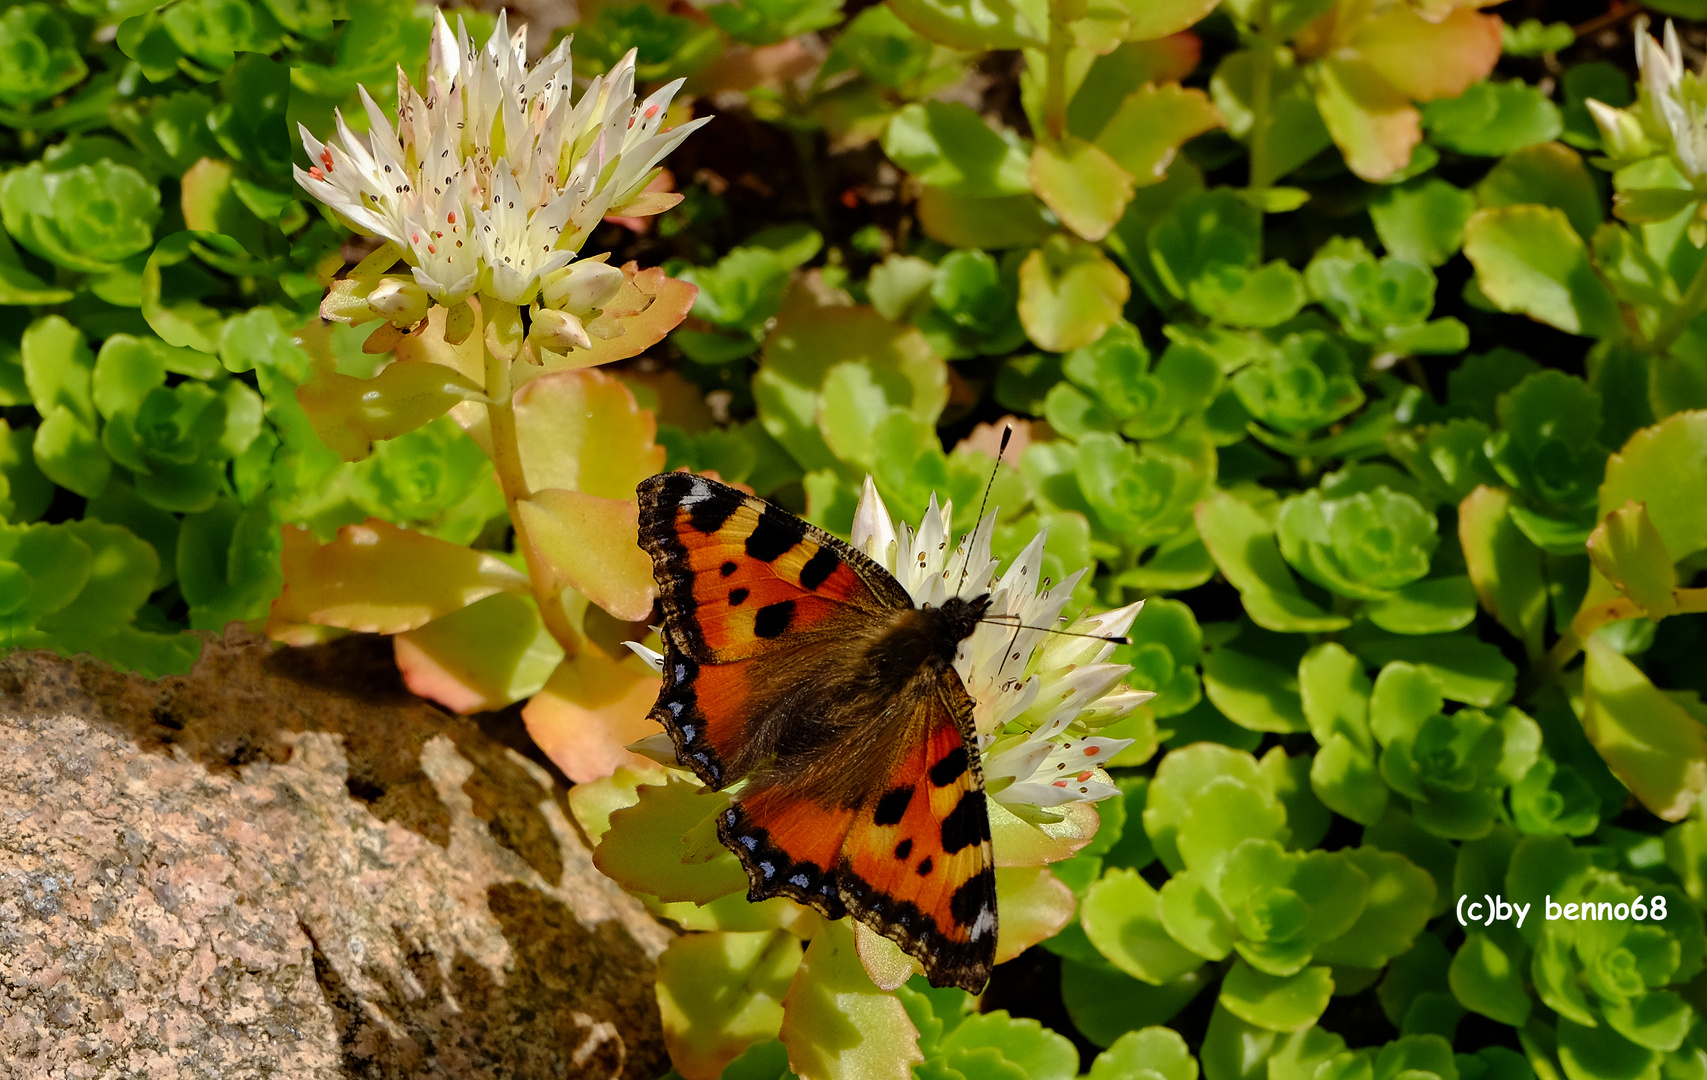 Schmetterling bei Muttern im Garten